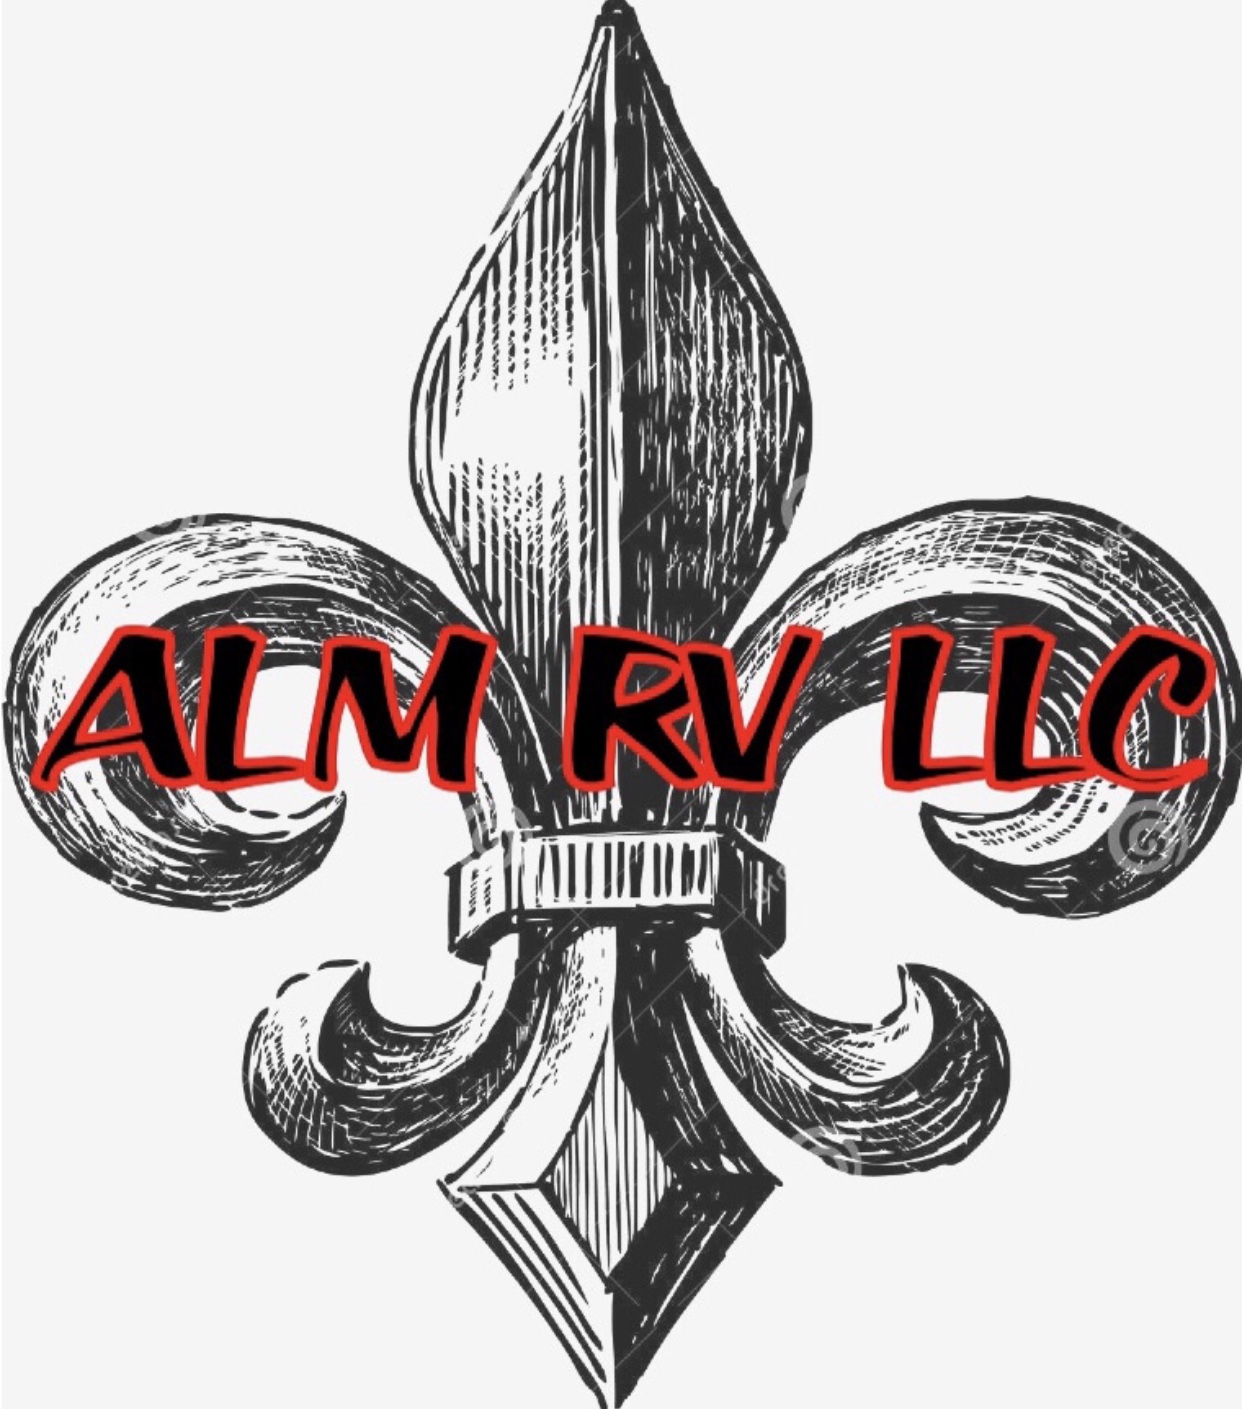 ALM RV LLC